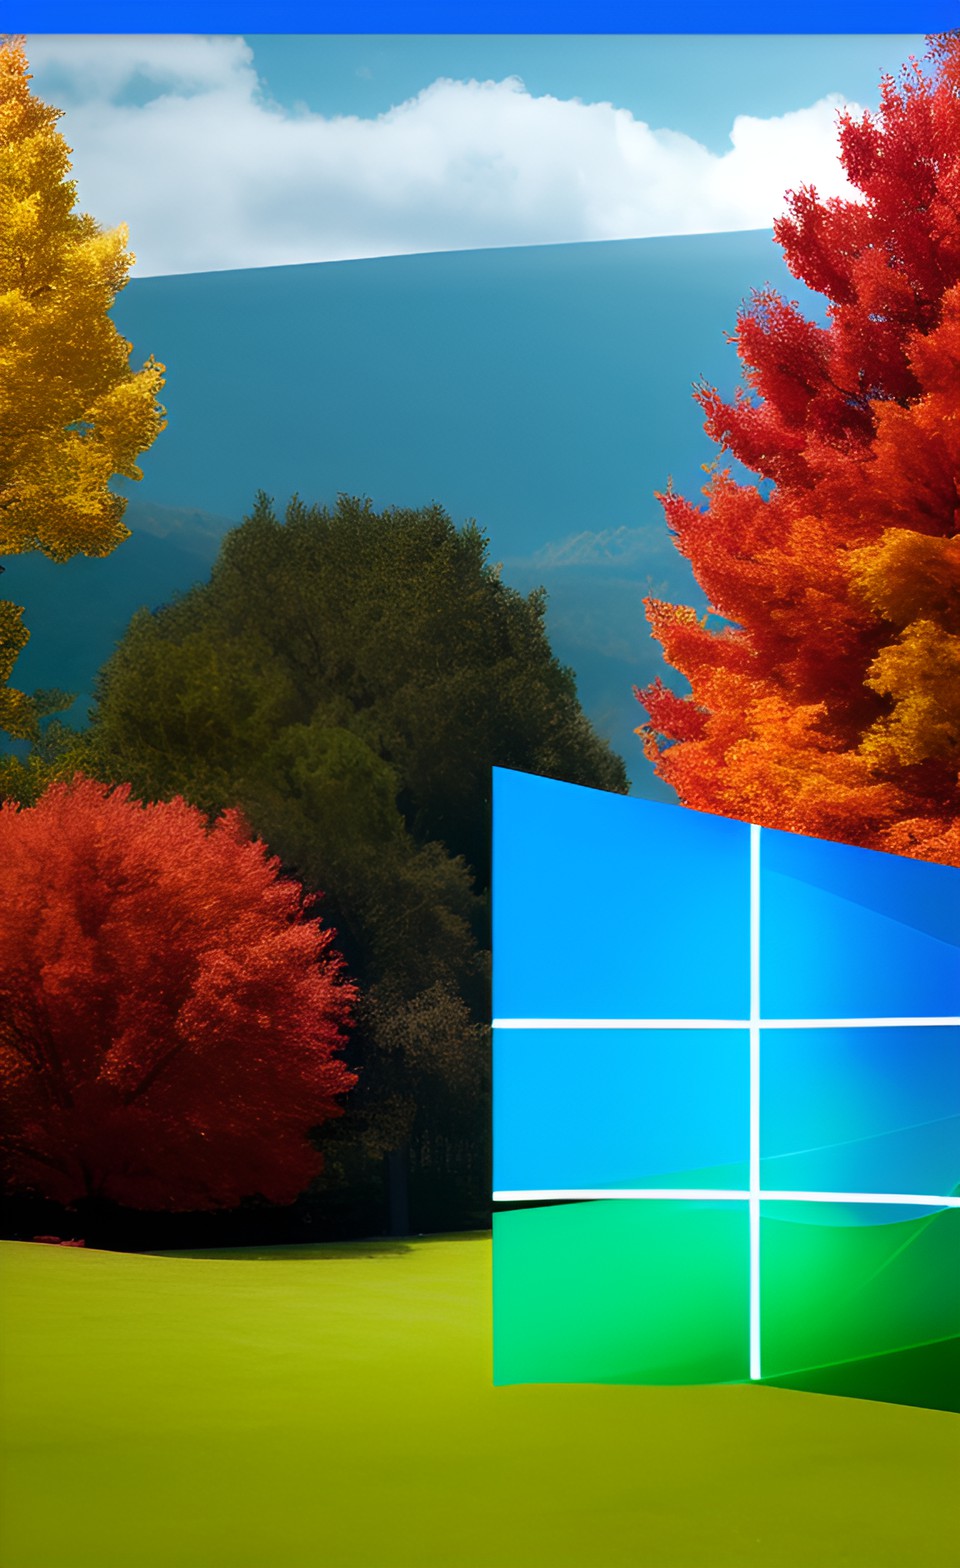 Come Windows 11 sta rivoluzionando l'era delle nuove tecnologie